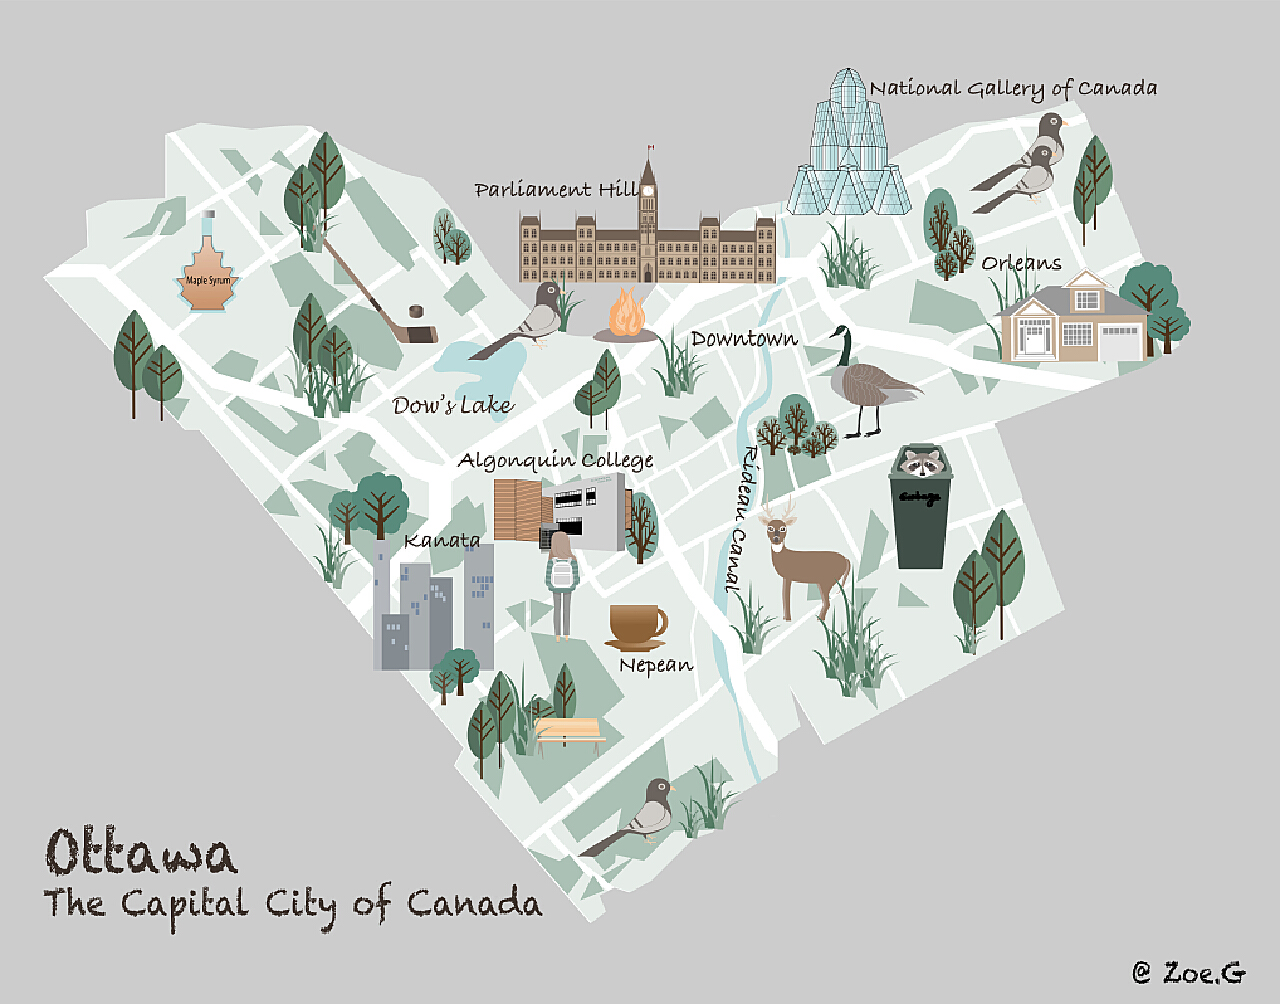 渥太华地图|渥太华地图全图高清版大图片|旅途风景图片网|www.visacits.com